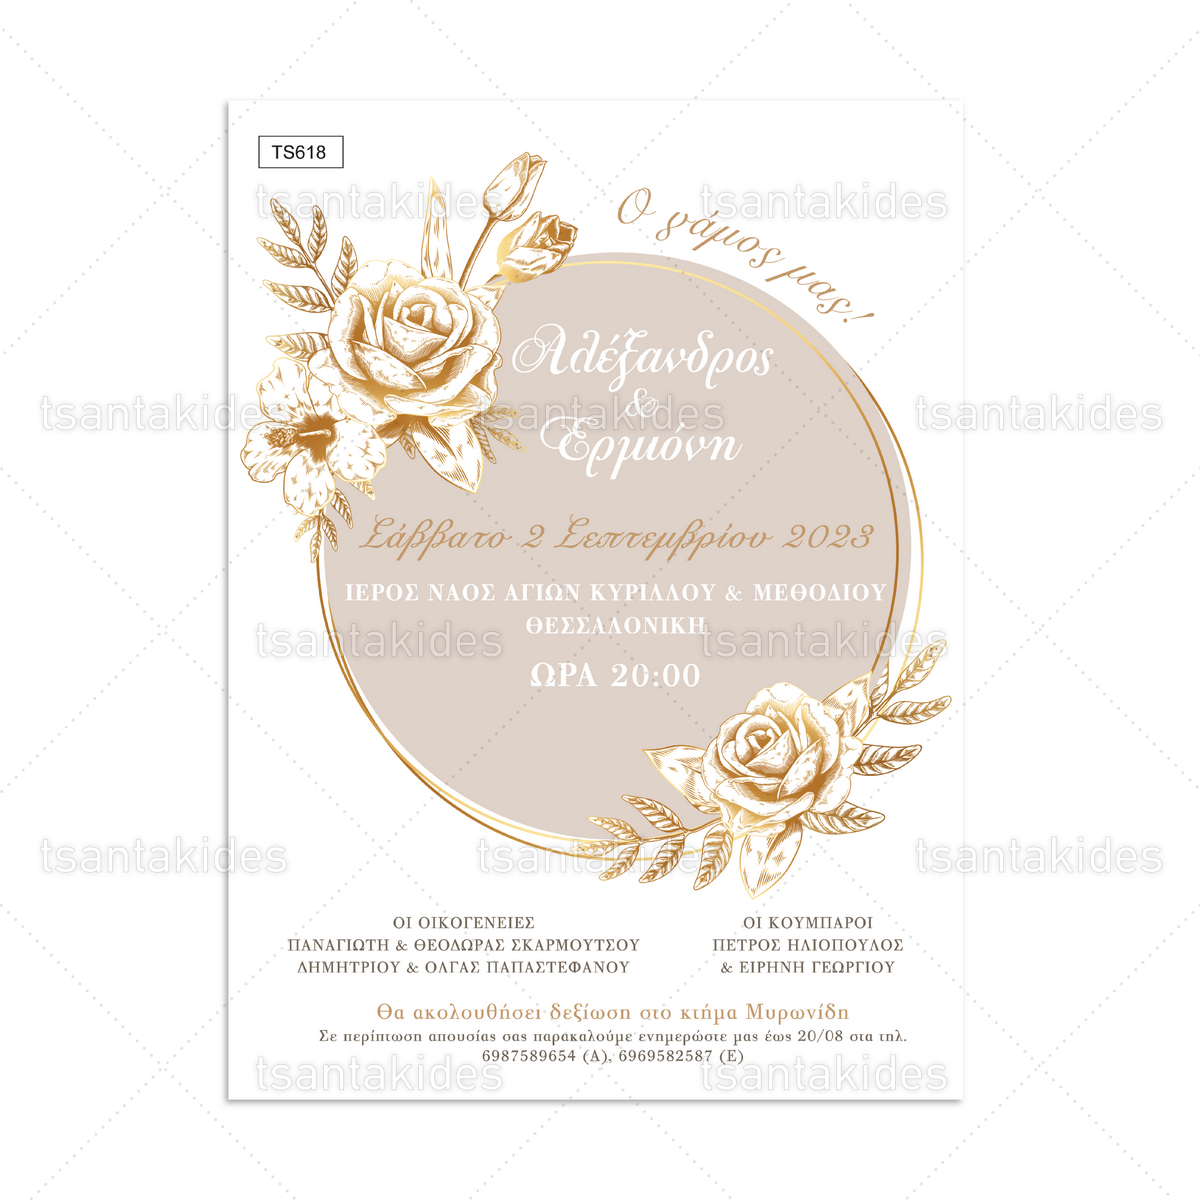 Προσκλητήριο Γάμου Με Χρυσό Στεφάνι Από Τριαντάφυλλα TS618